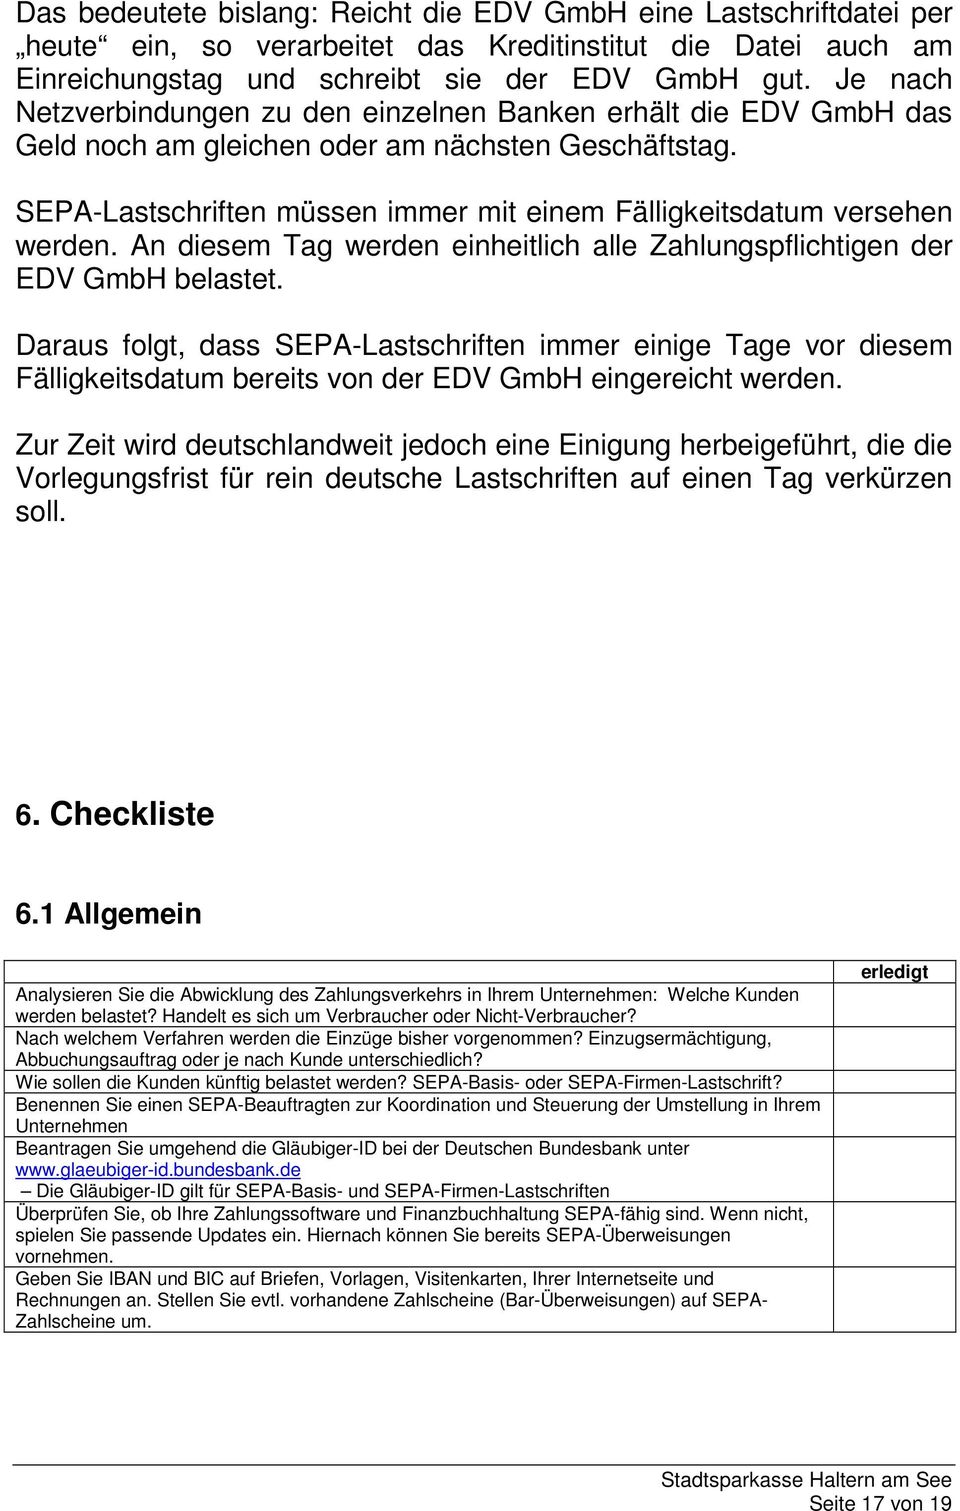 SEPA-Lastschriften müssen immer mit einem Fälligkeitsdatum versehen werden. An diesem Tag werden einheitlich alle Zahlungspflichtigen der EDV GmbH belastet.